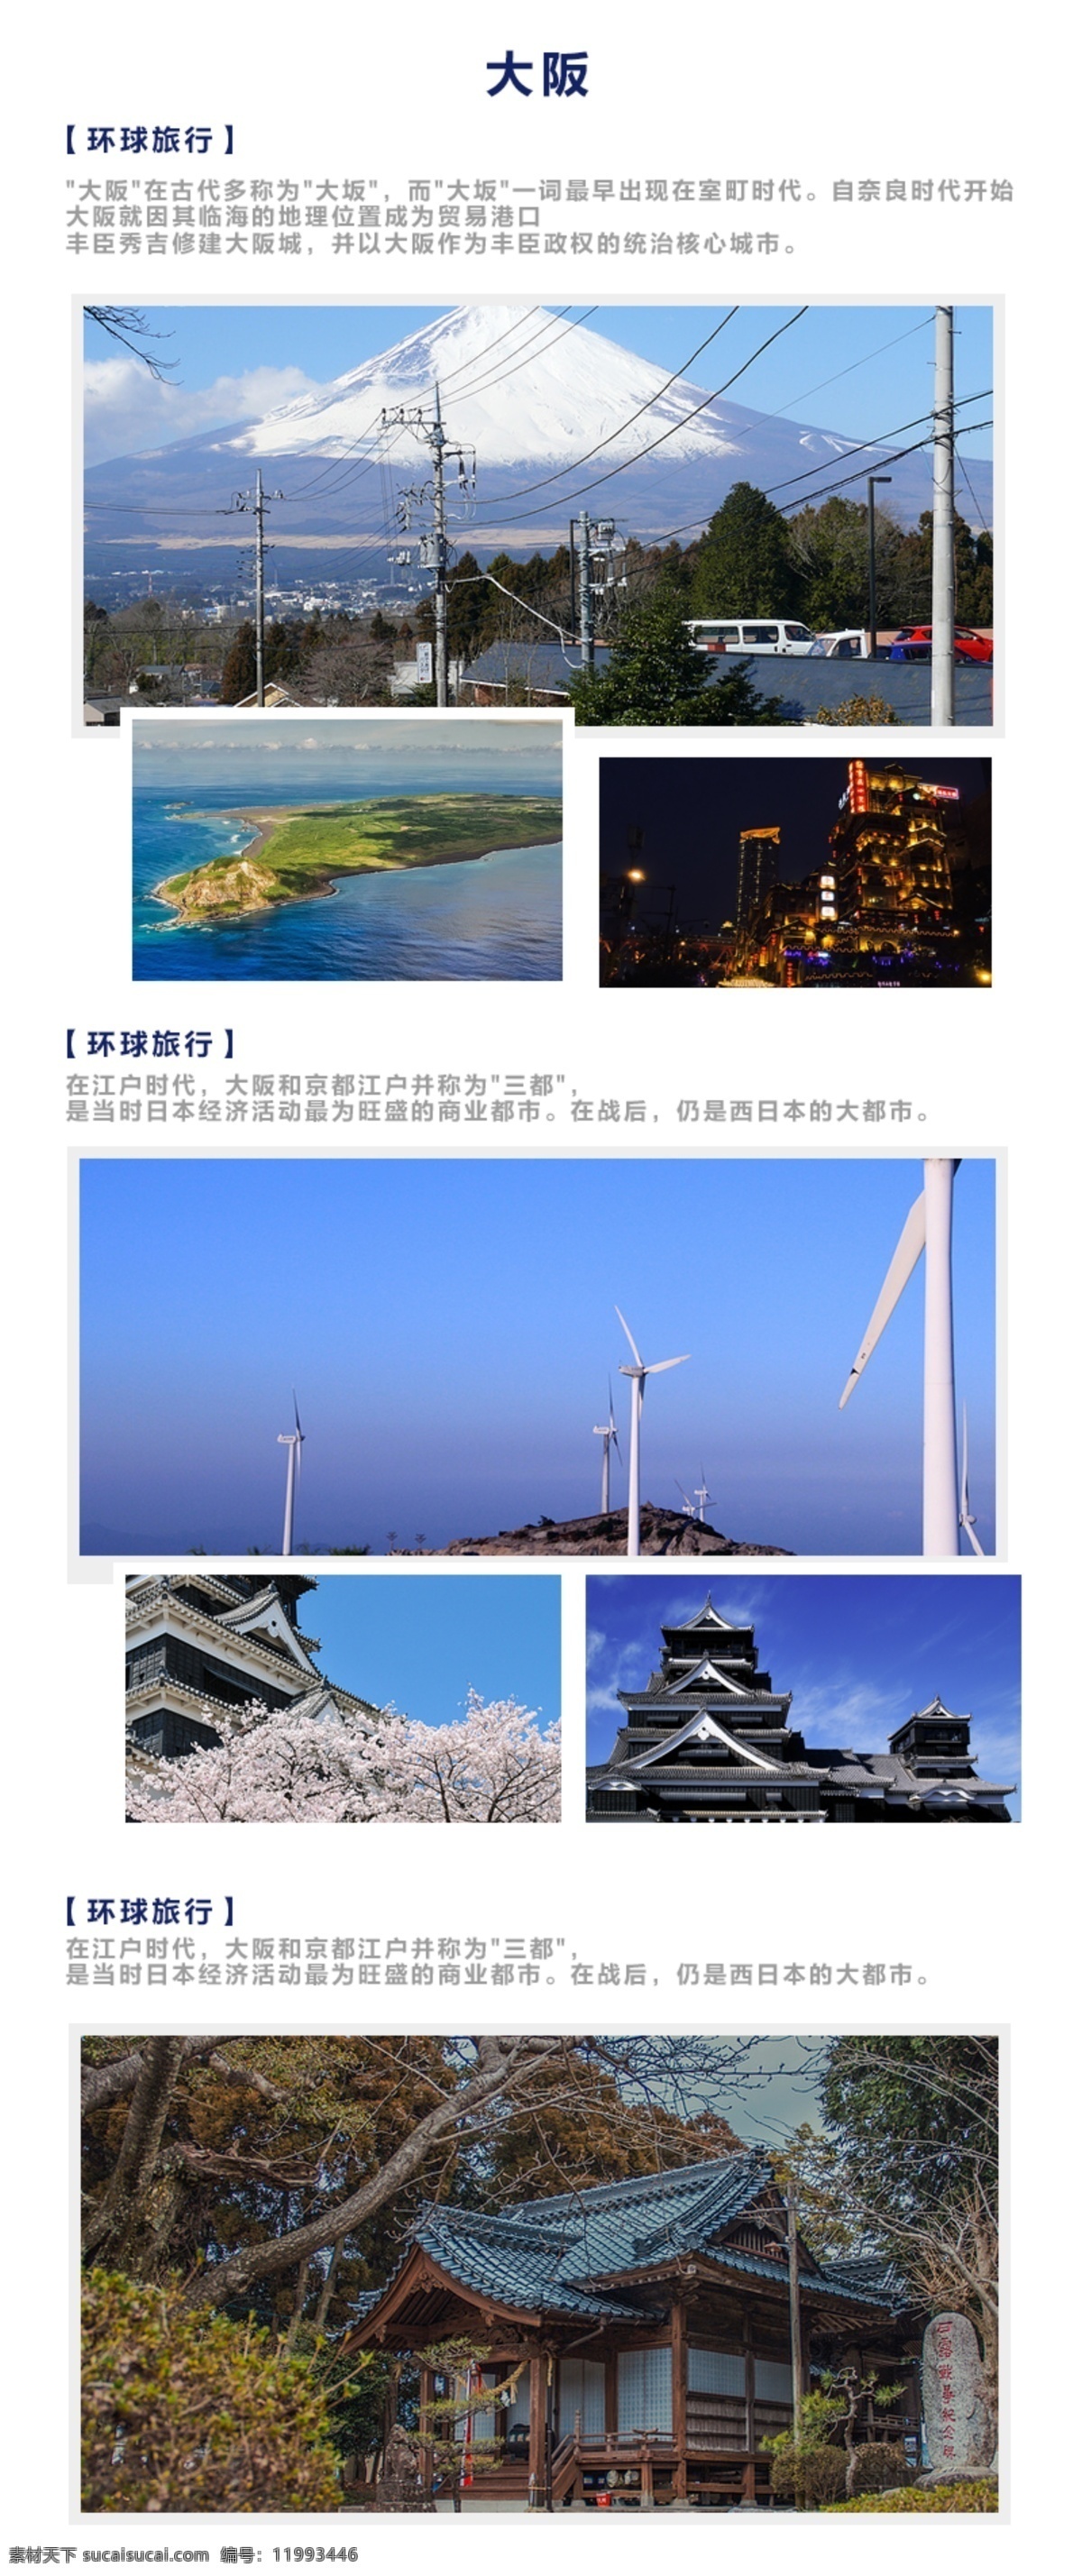 风景排版模板 日本 风景 大阪 介绍 排版 页面